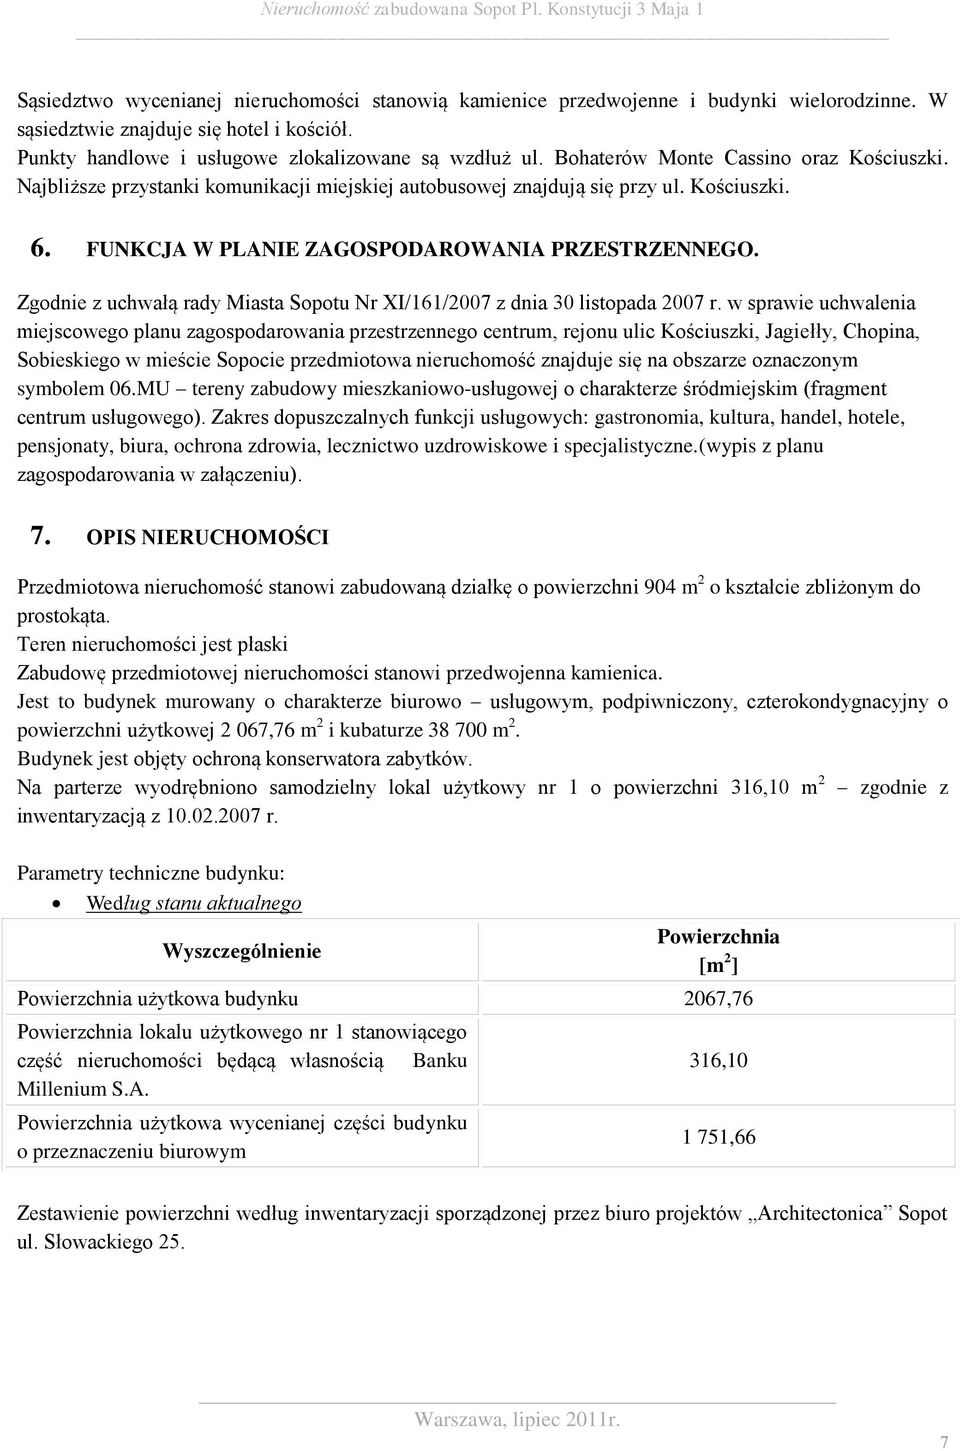 Zgodnie z uchwałą rady Miasta Sopotu Nr XI/161/2007 z dnia 30 listopada 2007 r.